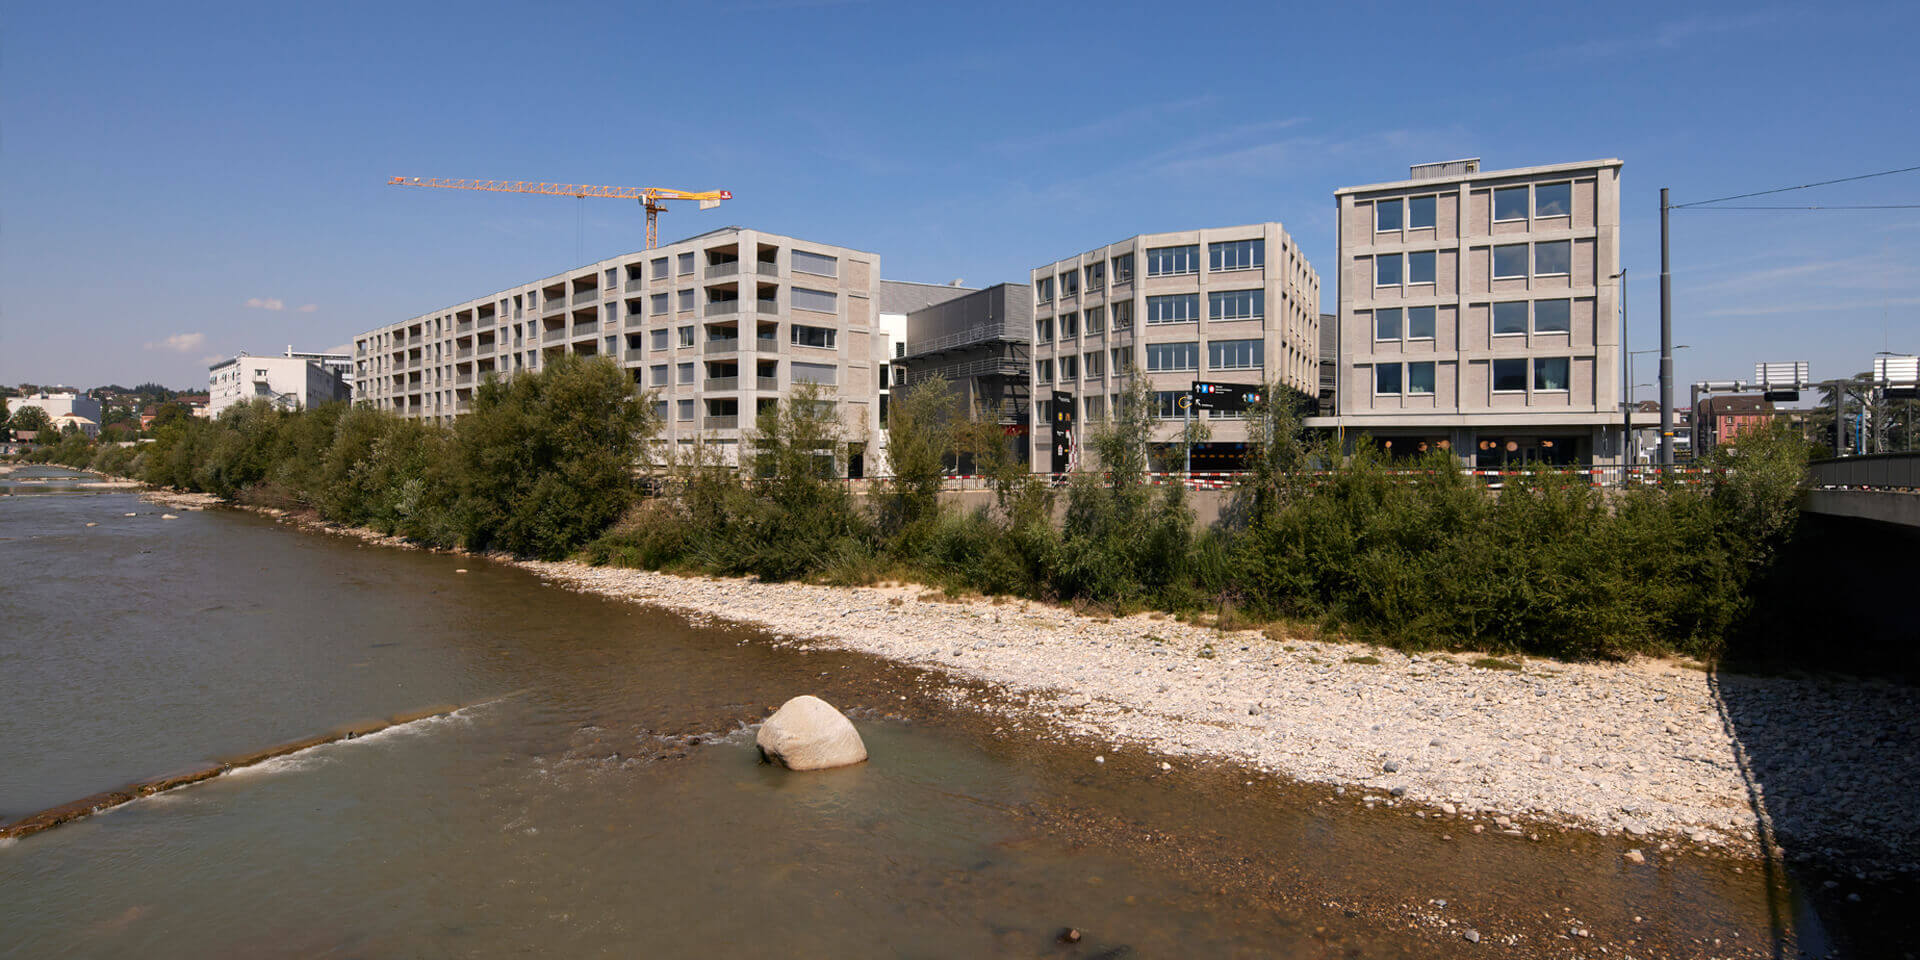 Ici, les gens vivent et travaillent dans un centre moderne, écologique et animé au bord de la rivière. Pour atteindre pleinement cet objectif, Lucerne Nord doit se développer en tant que smart city.